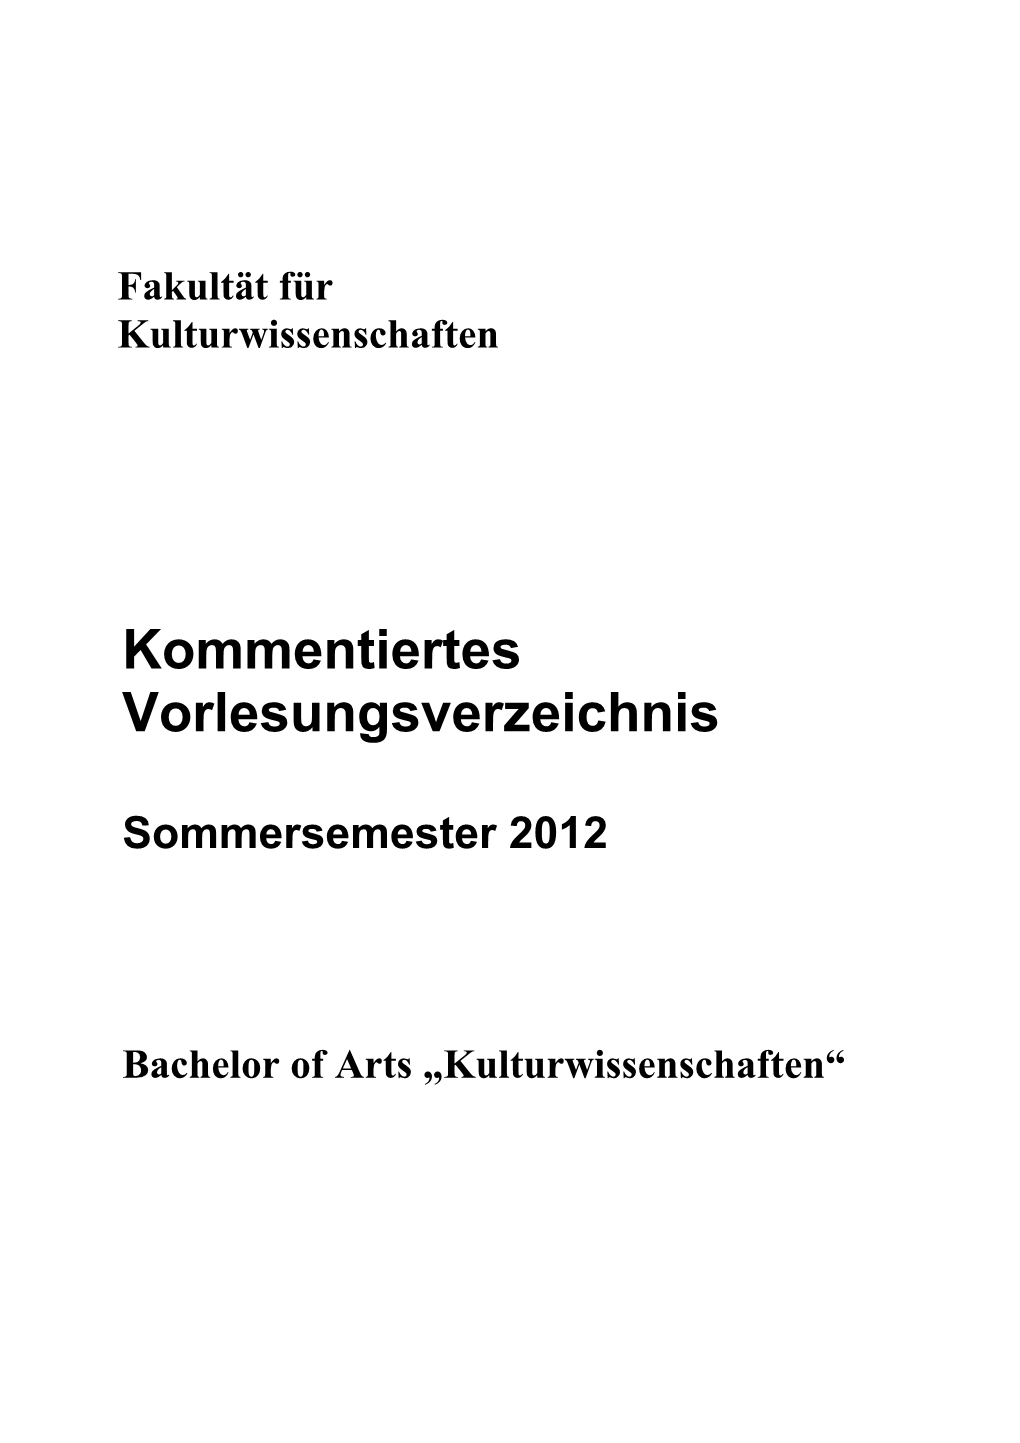 BA Kulturwissenschaften Sose 2012